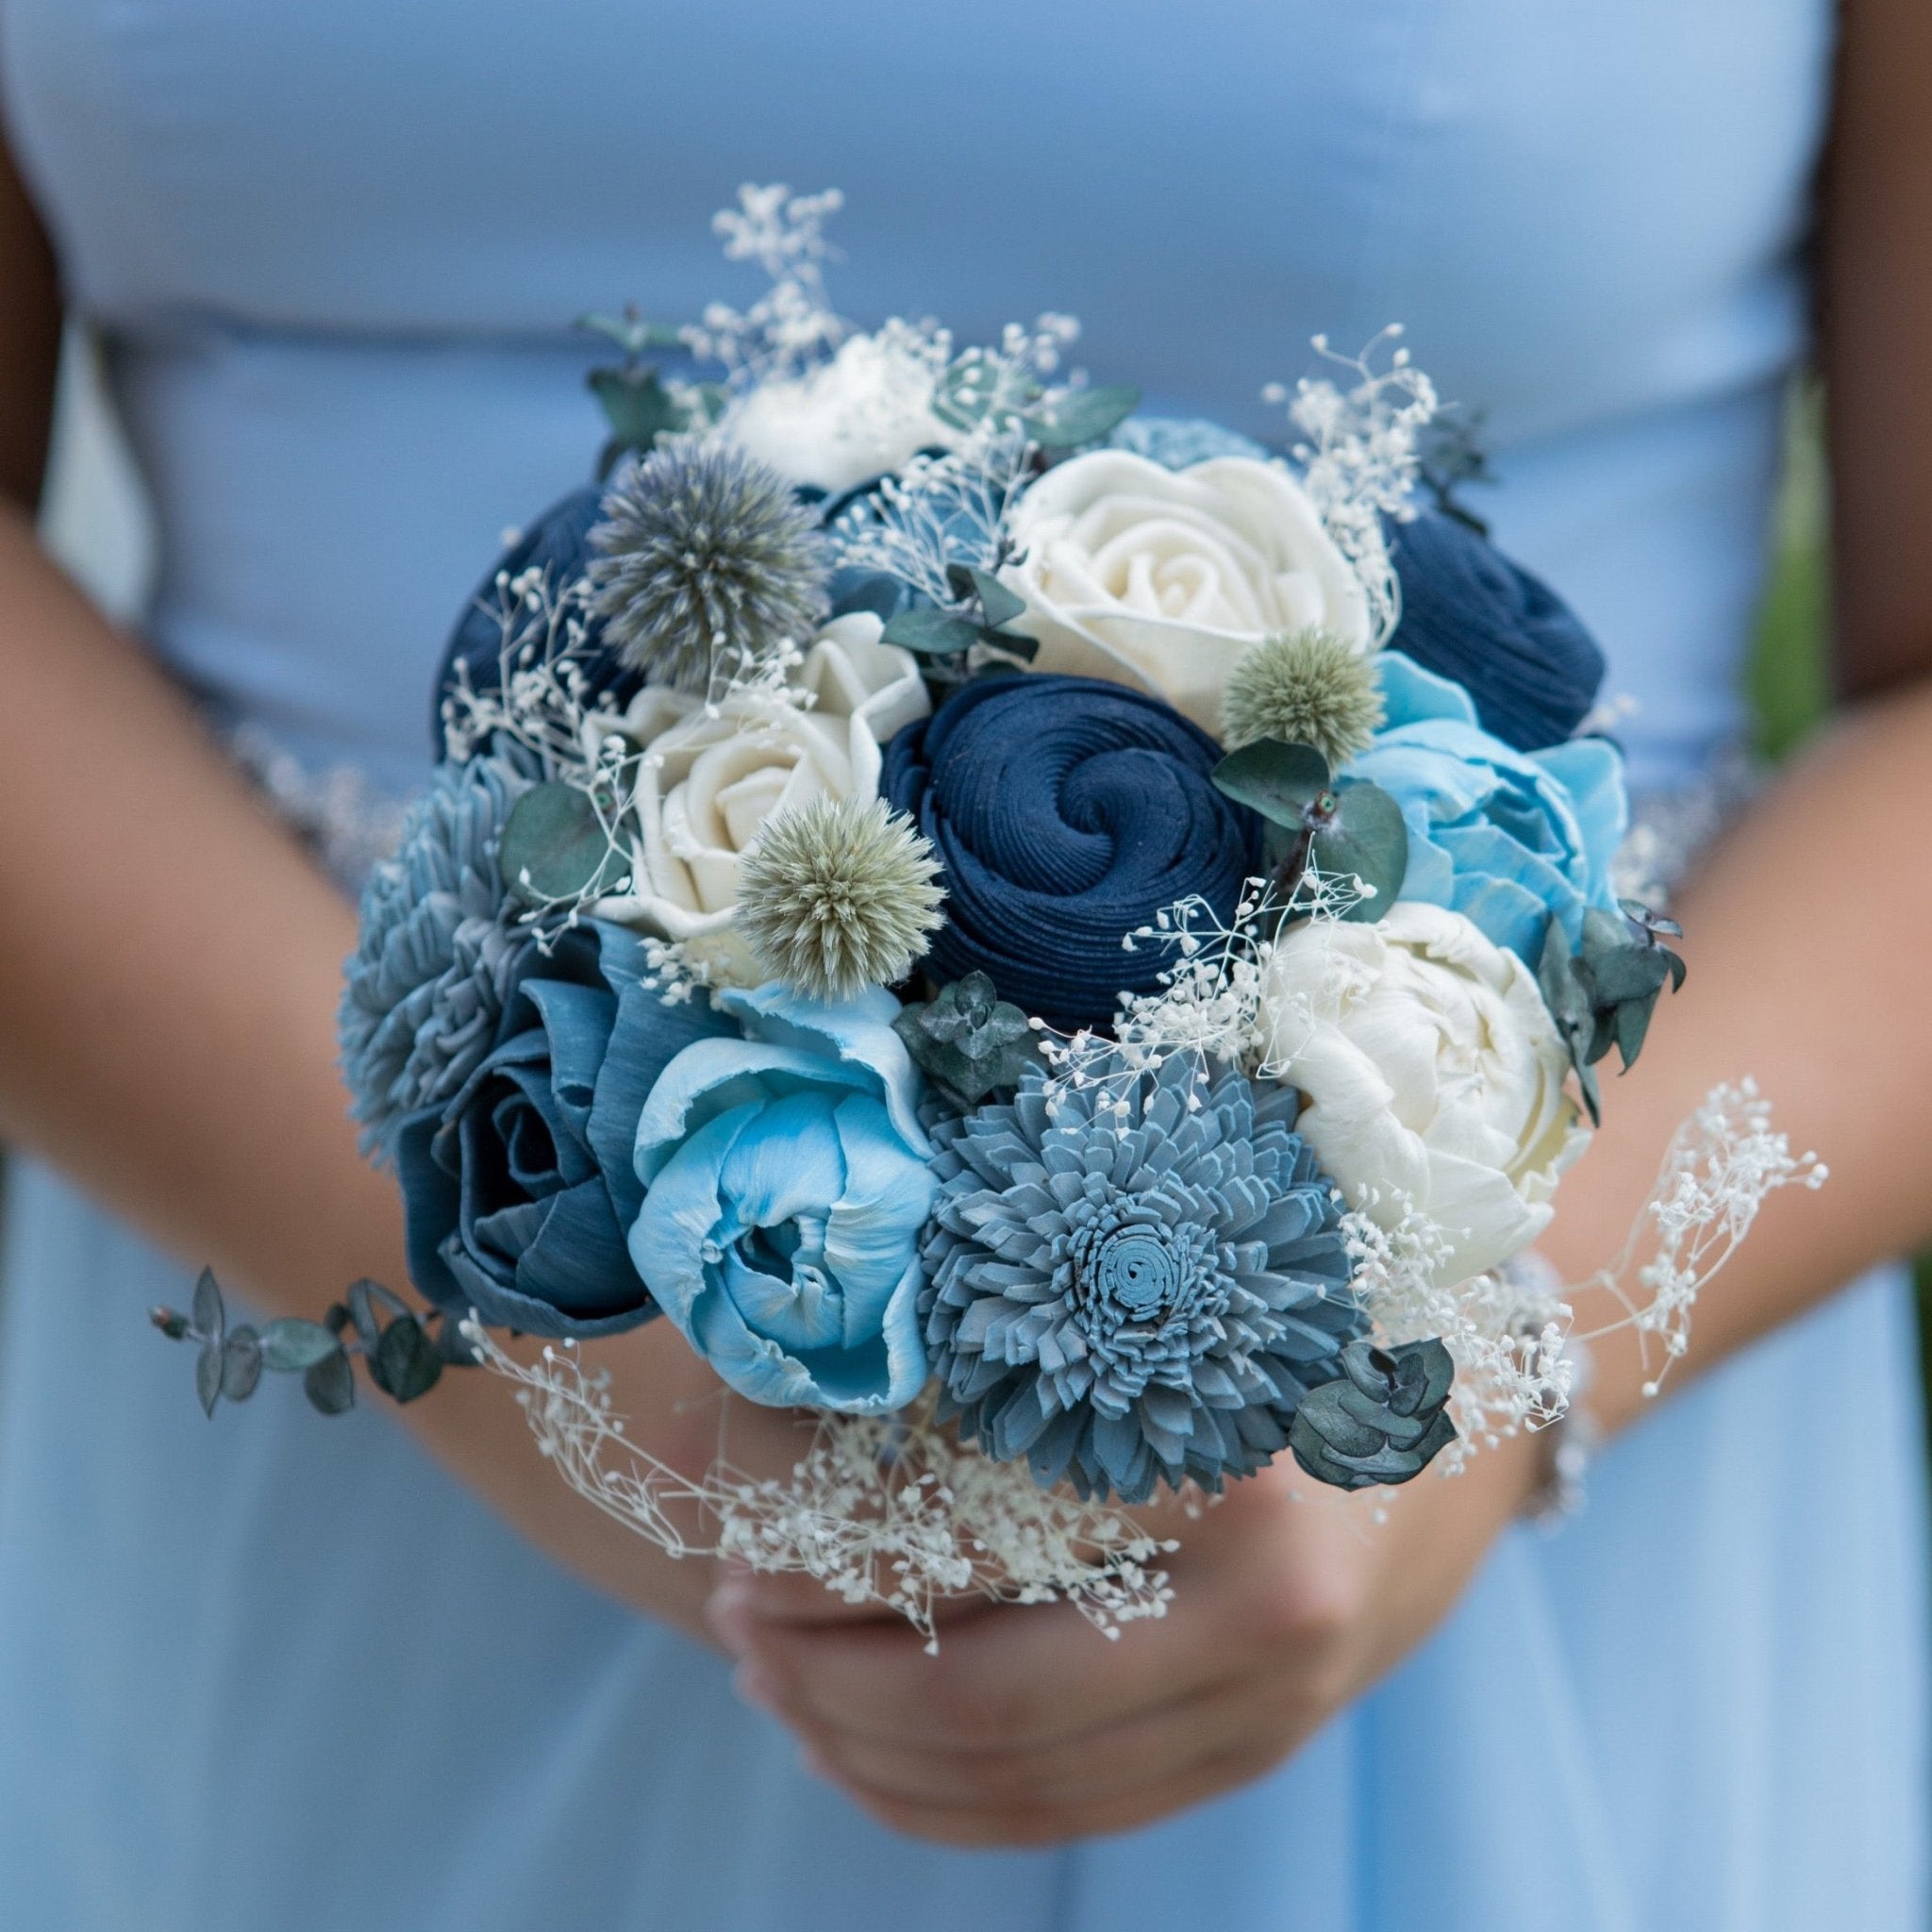 Something Blue Bouquet - PapiroExtra Large 12" Bride